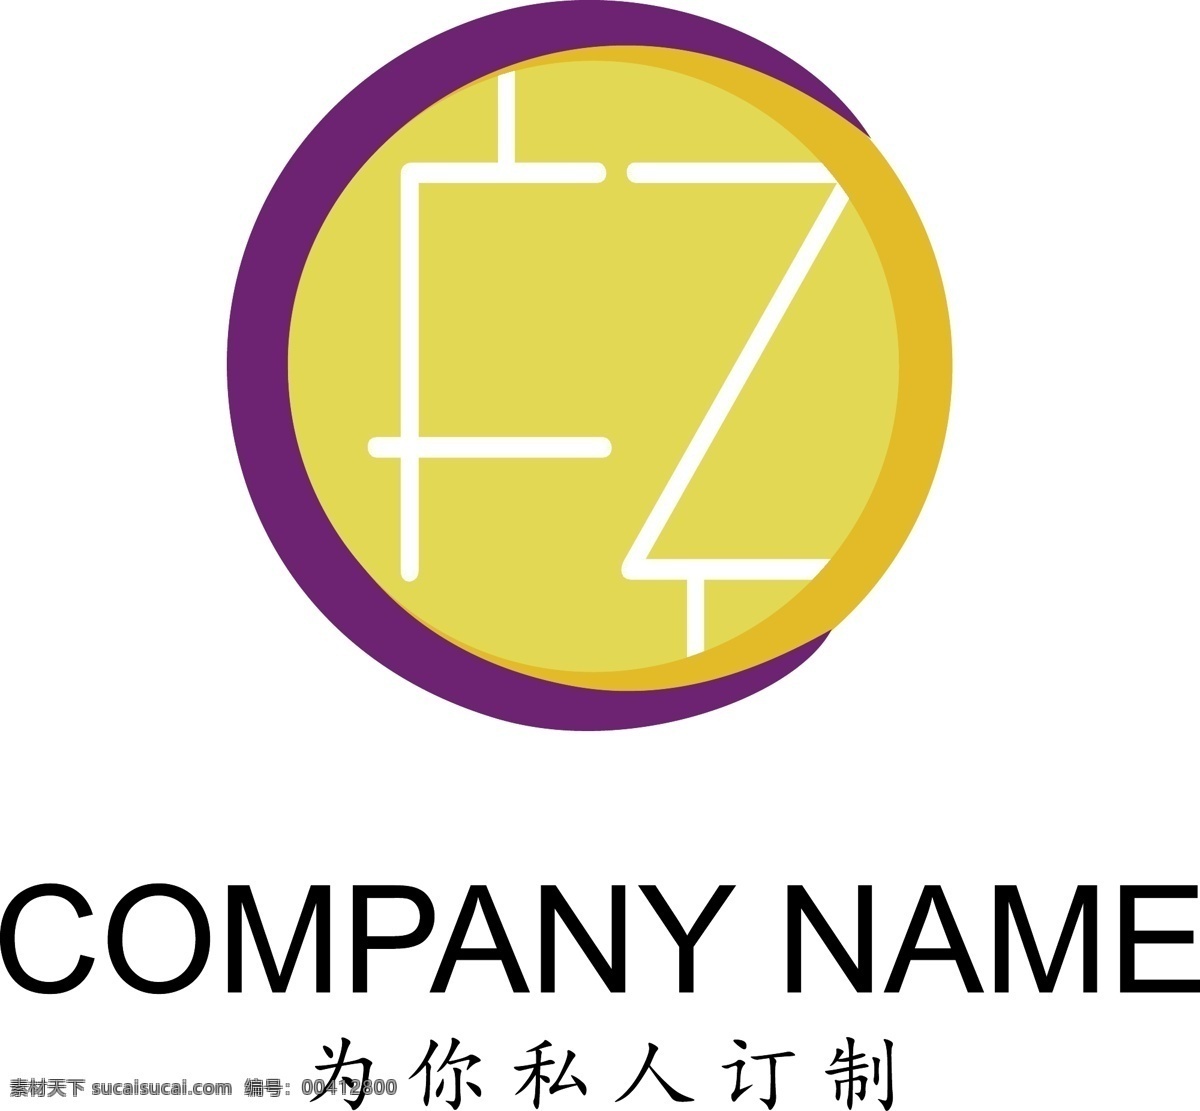 紫 黄 服装服饰 通用 logo 简约 服装